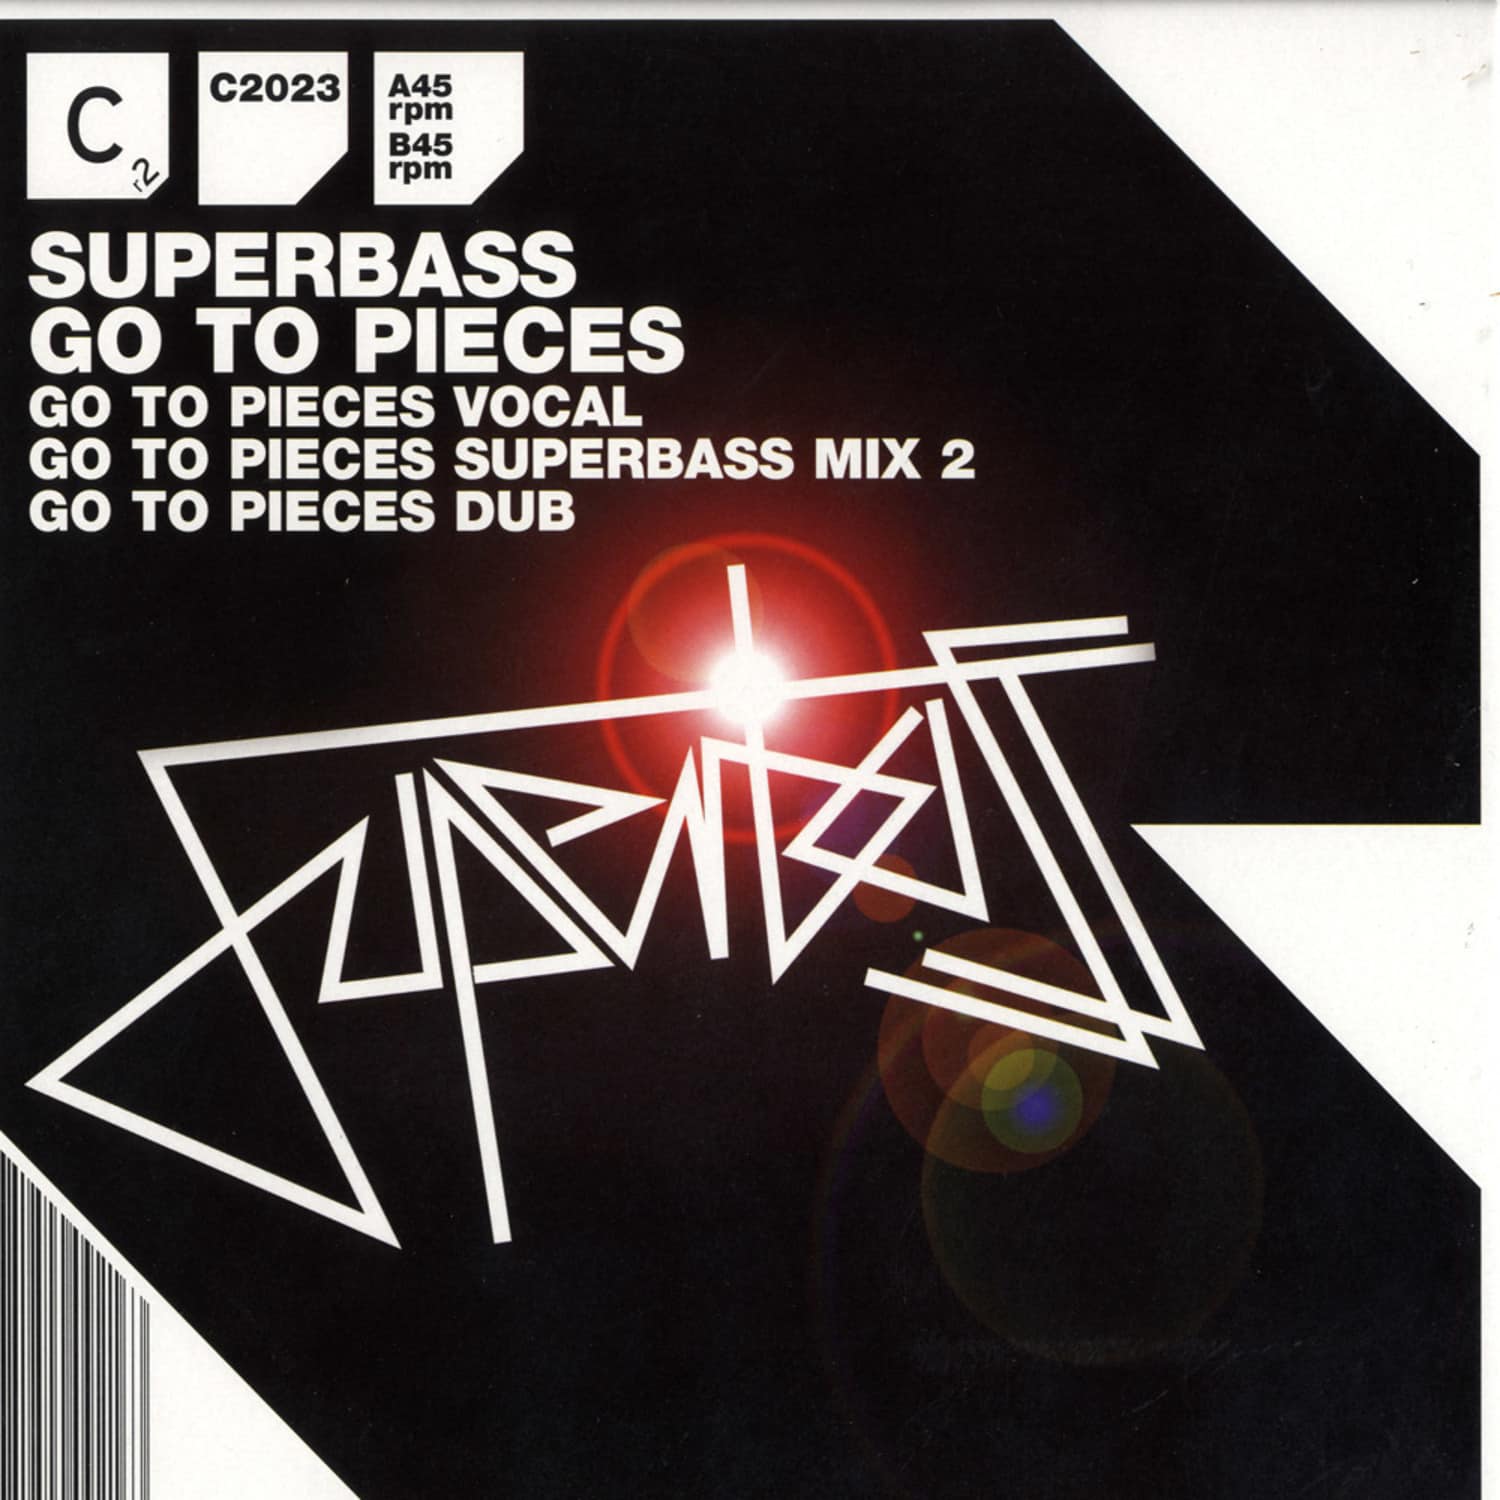 Superbass - GO TO PIECES